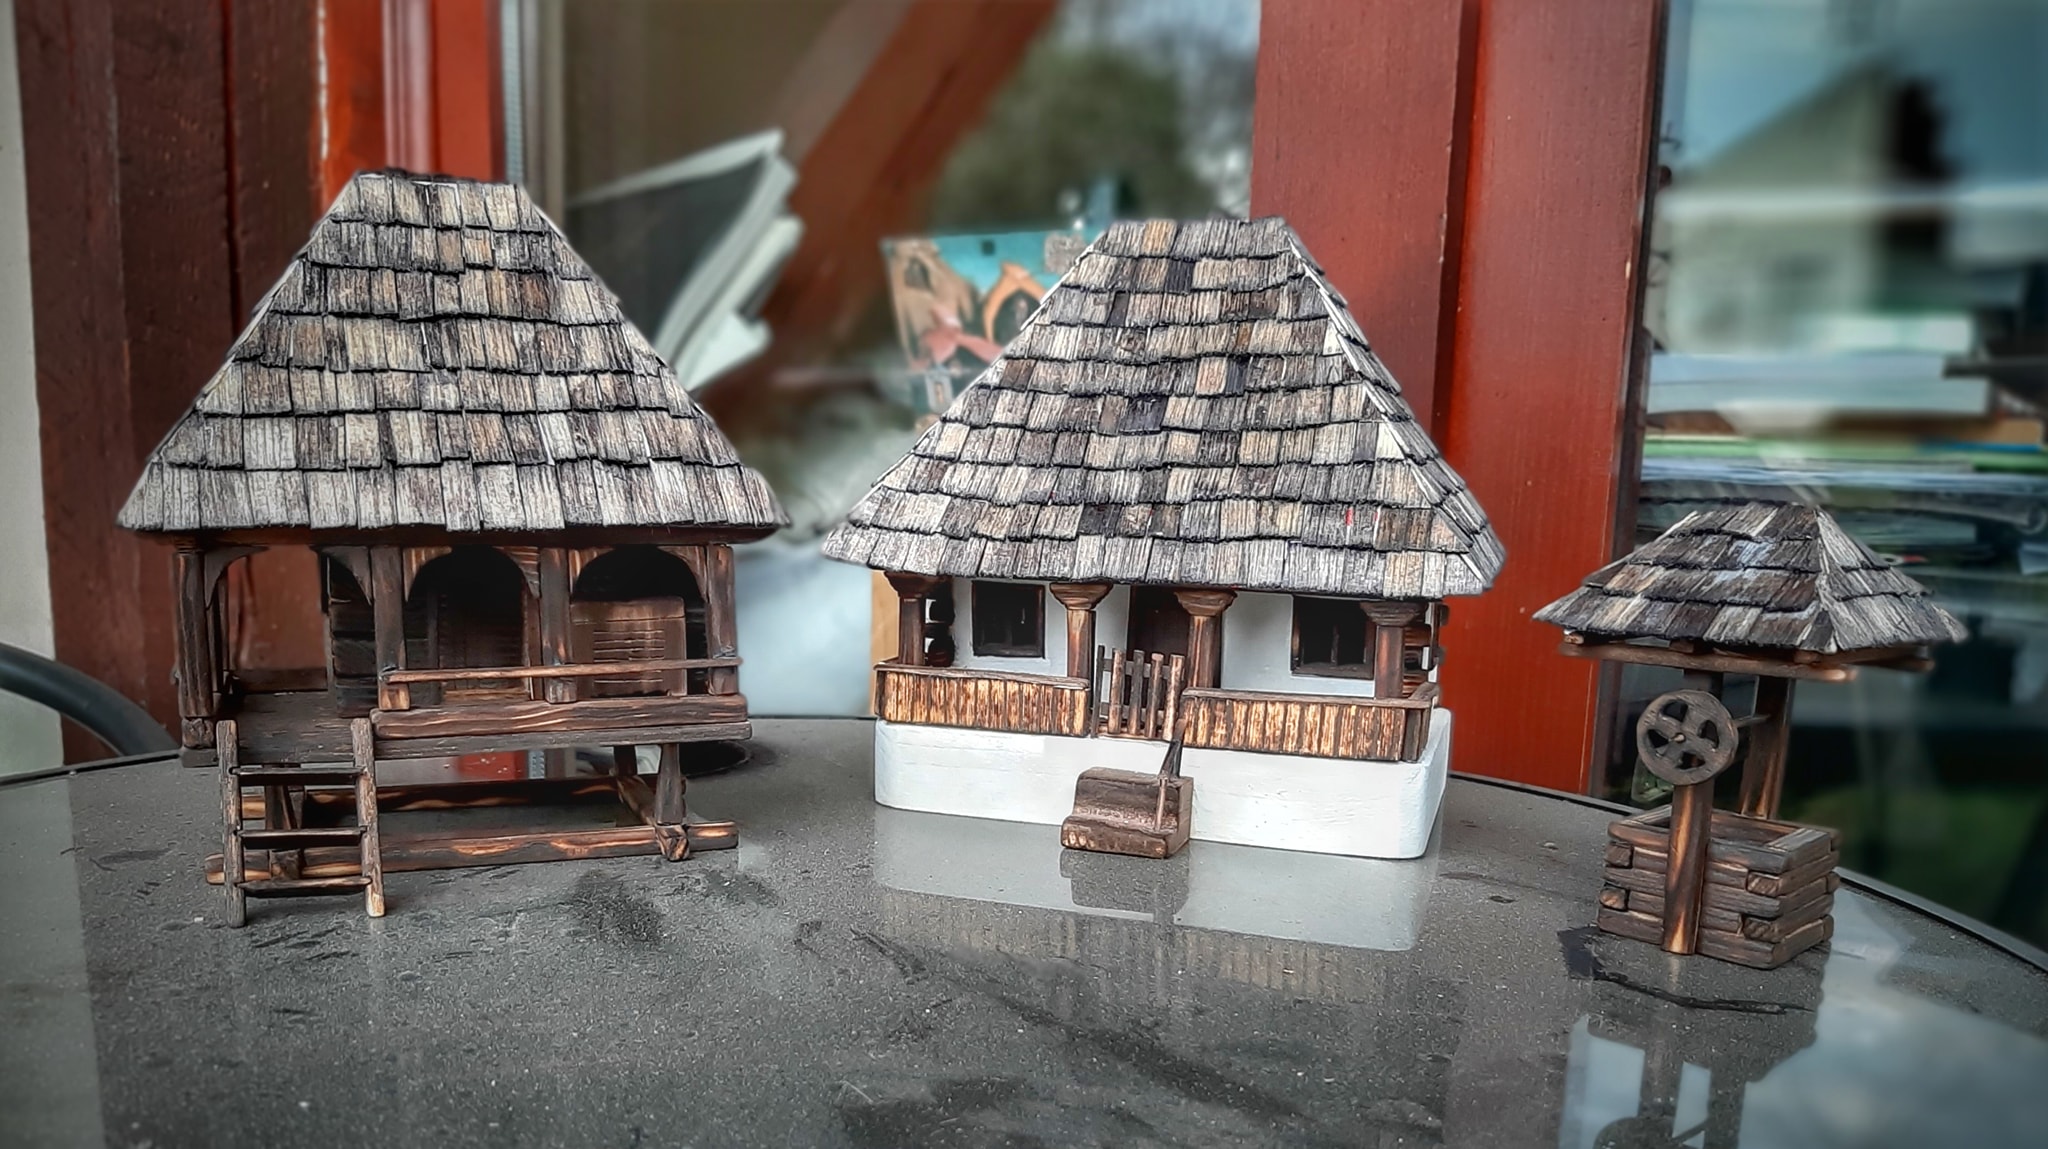 Satul Tradițional Hunedorean in miniatură